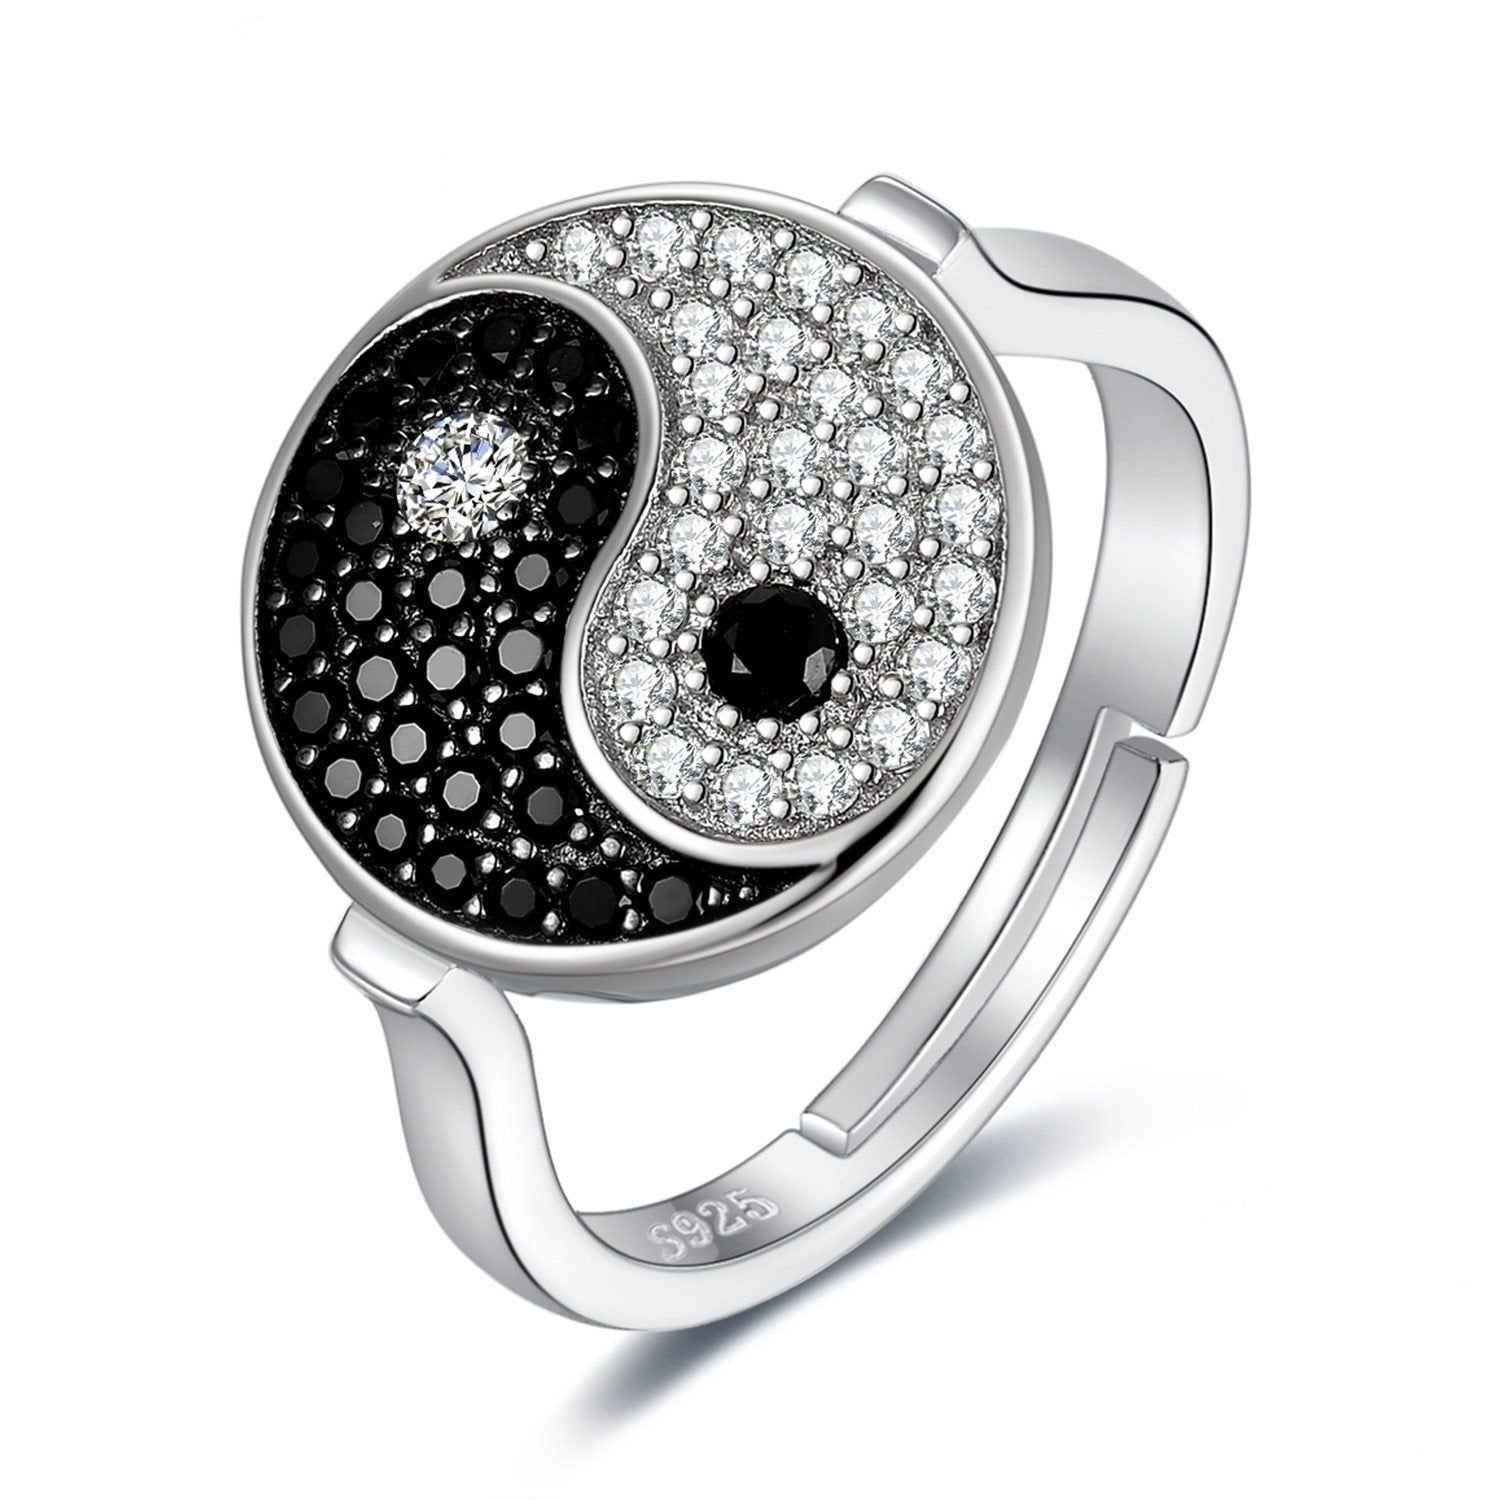 Taiji Yin Yang Genuine Black Spinel 925 Sterling Silver Ring